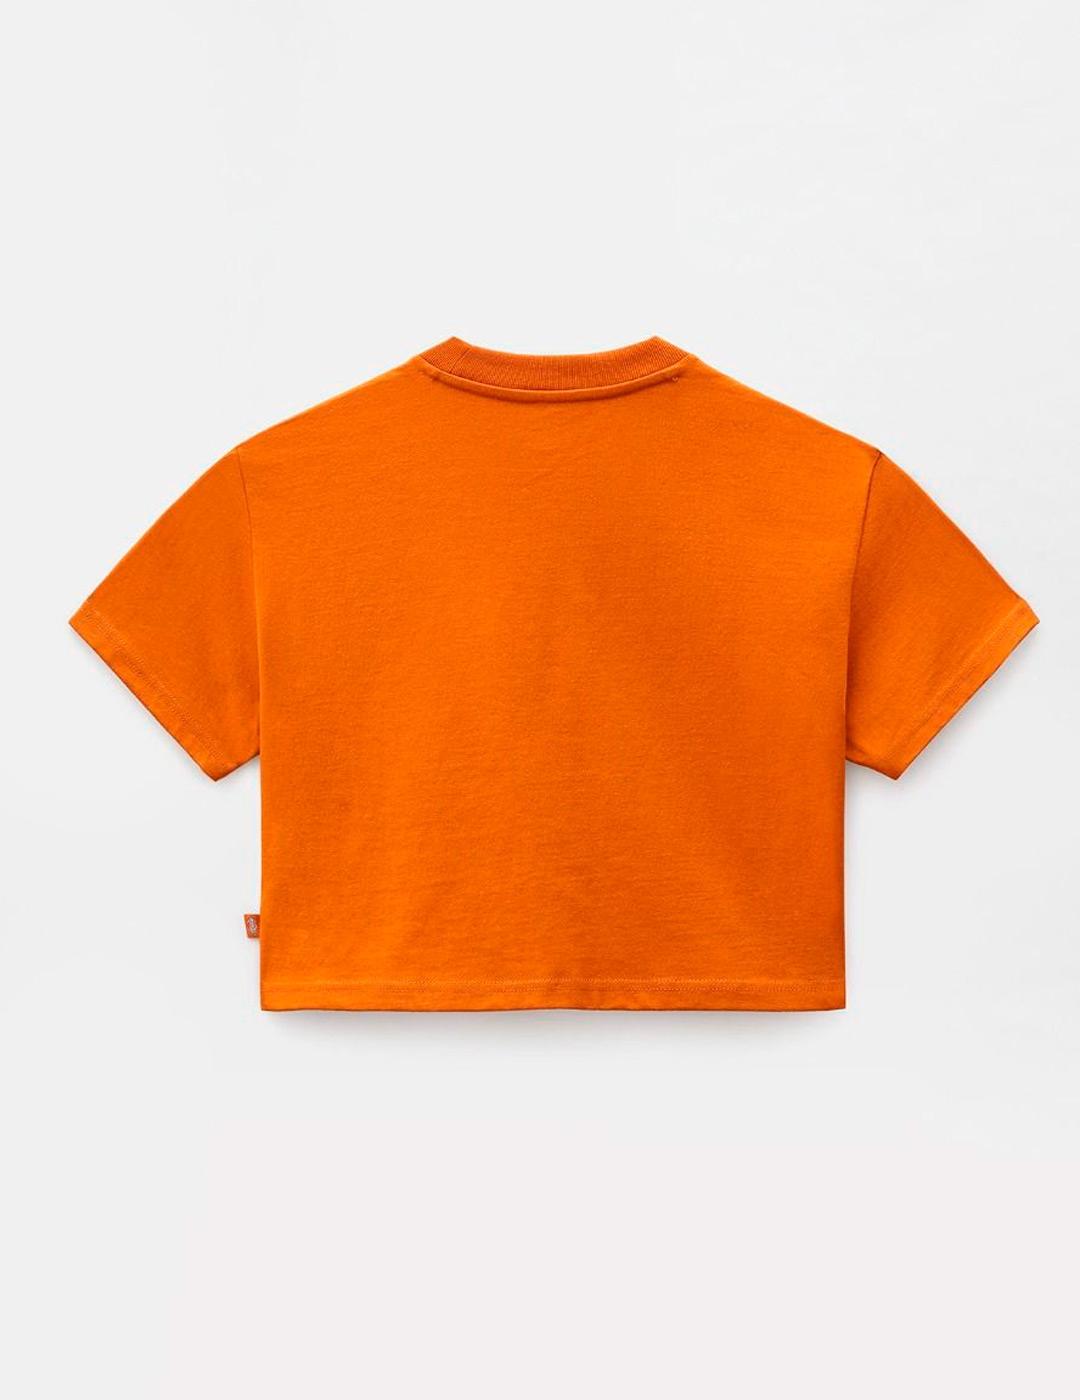 Camiseta WM PORTERDALE CROP - Pumpkin Spice